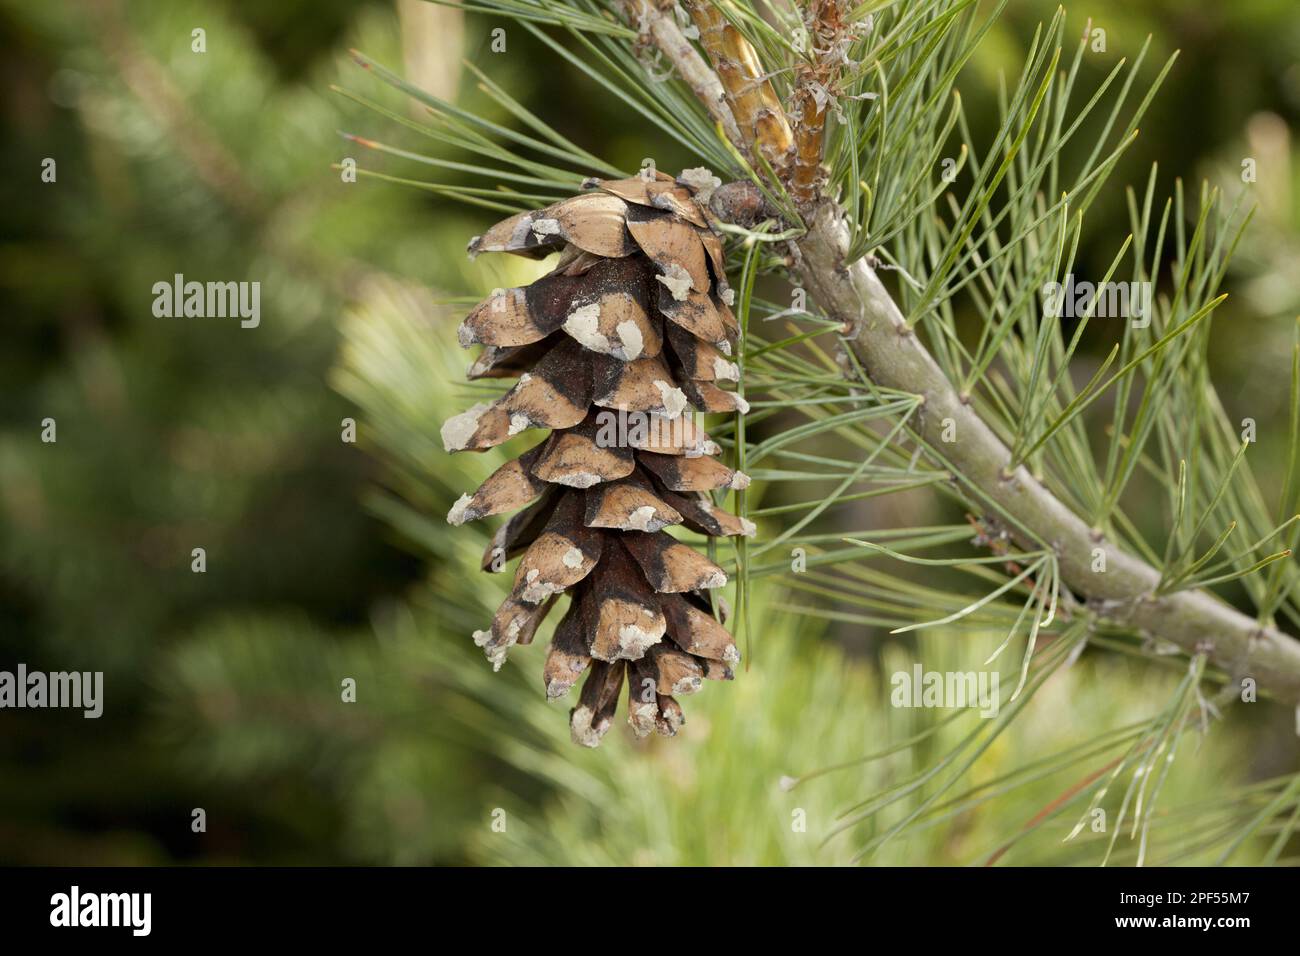 Balkan pine, Macedonian pine (Pinus peuce), Balkan pine, Pine family, Macedonian Pine close-up of female cone, Rila Mountains, Bulgaria Stock Photo